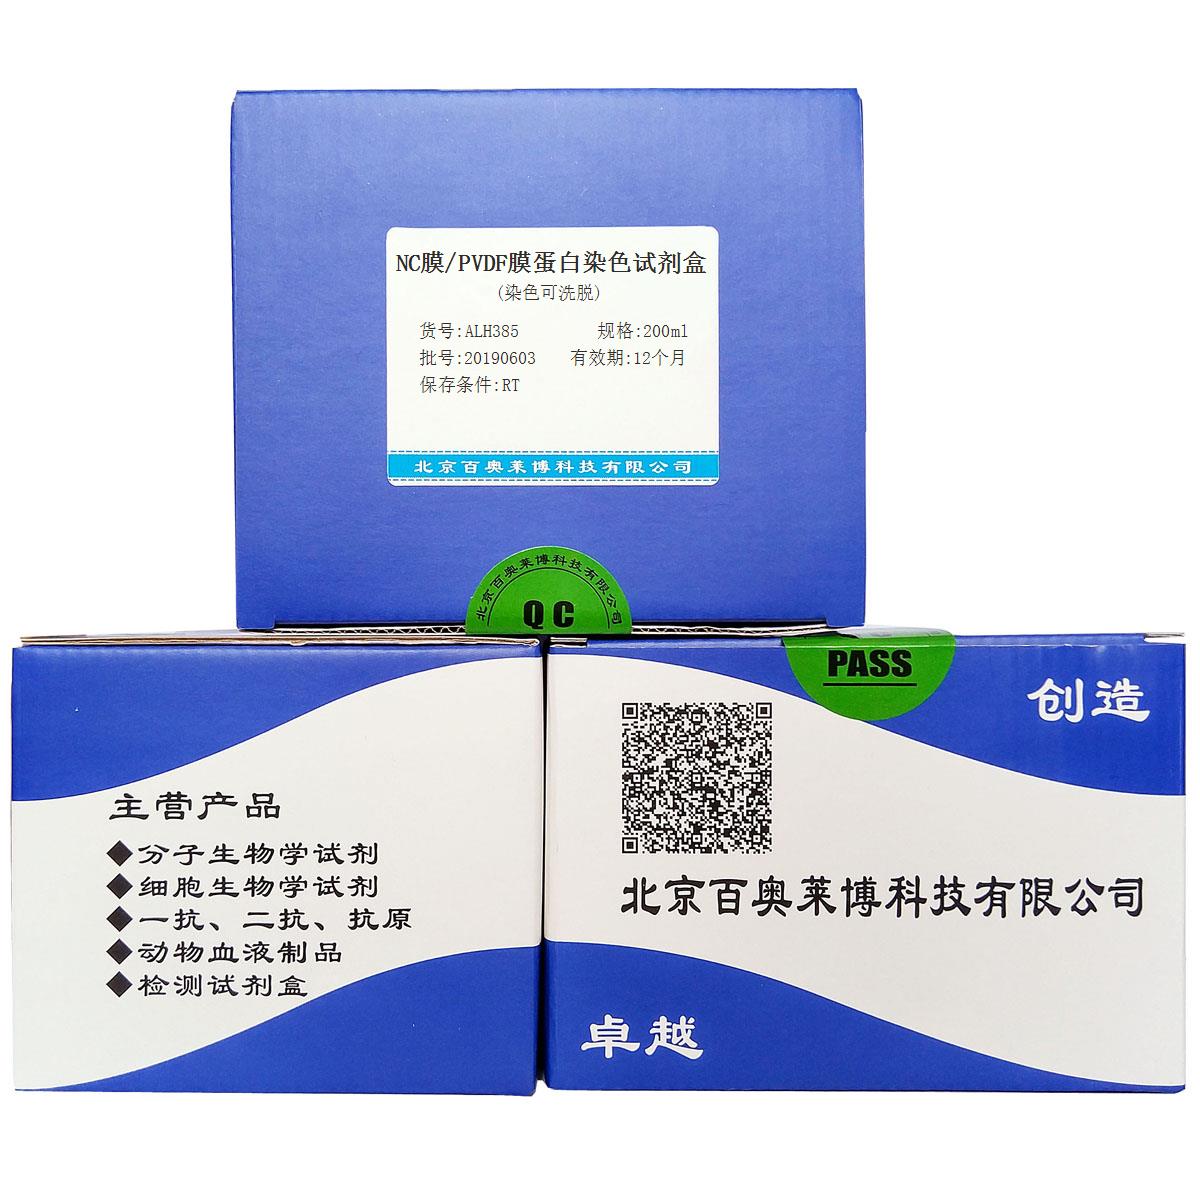 NC膜/PVDF膜蛋白染色试剂盒(染色可洗脱)